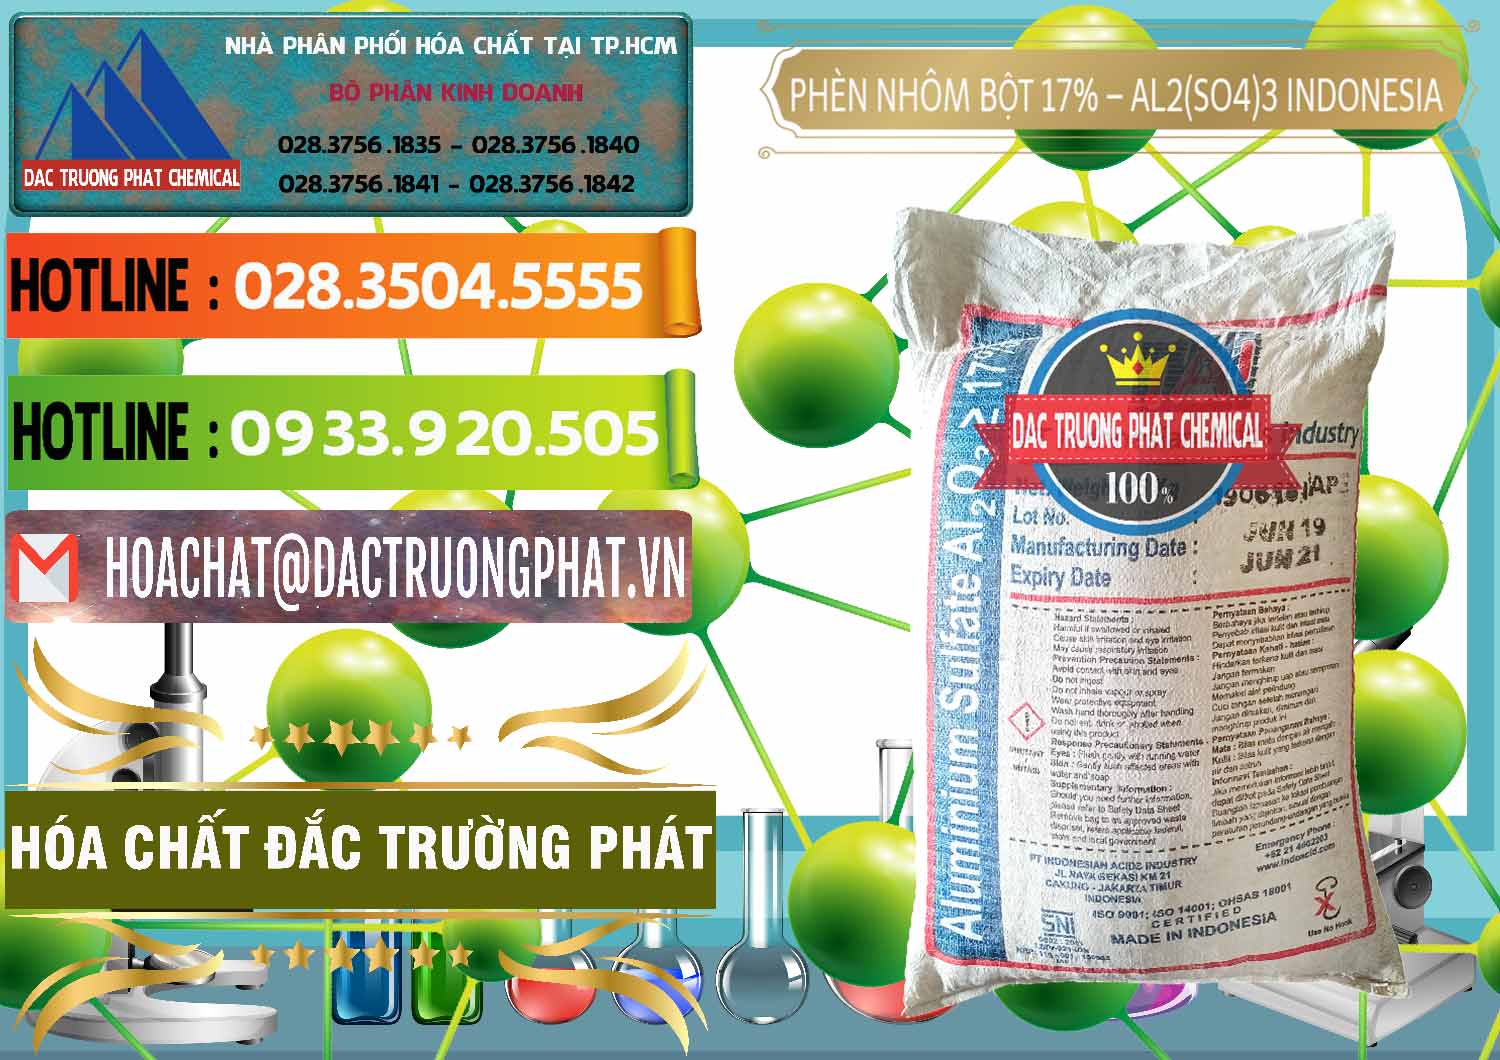 Công ty bán _ phân phối Phèn Nhôm Bột - Al2(SO4)3 17% bao 25kg Indonesia - 0114 - Đơn vị nhập khẩu ( cung cấp ) hóa chất tại TP.HCM - cungcaphoachat.com.vn